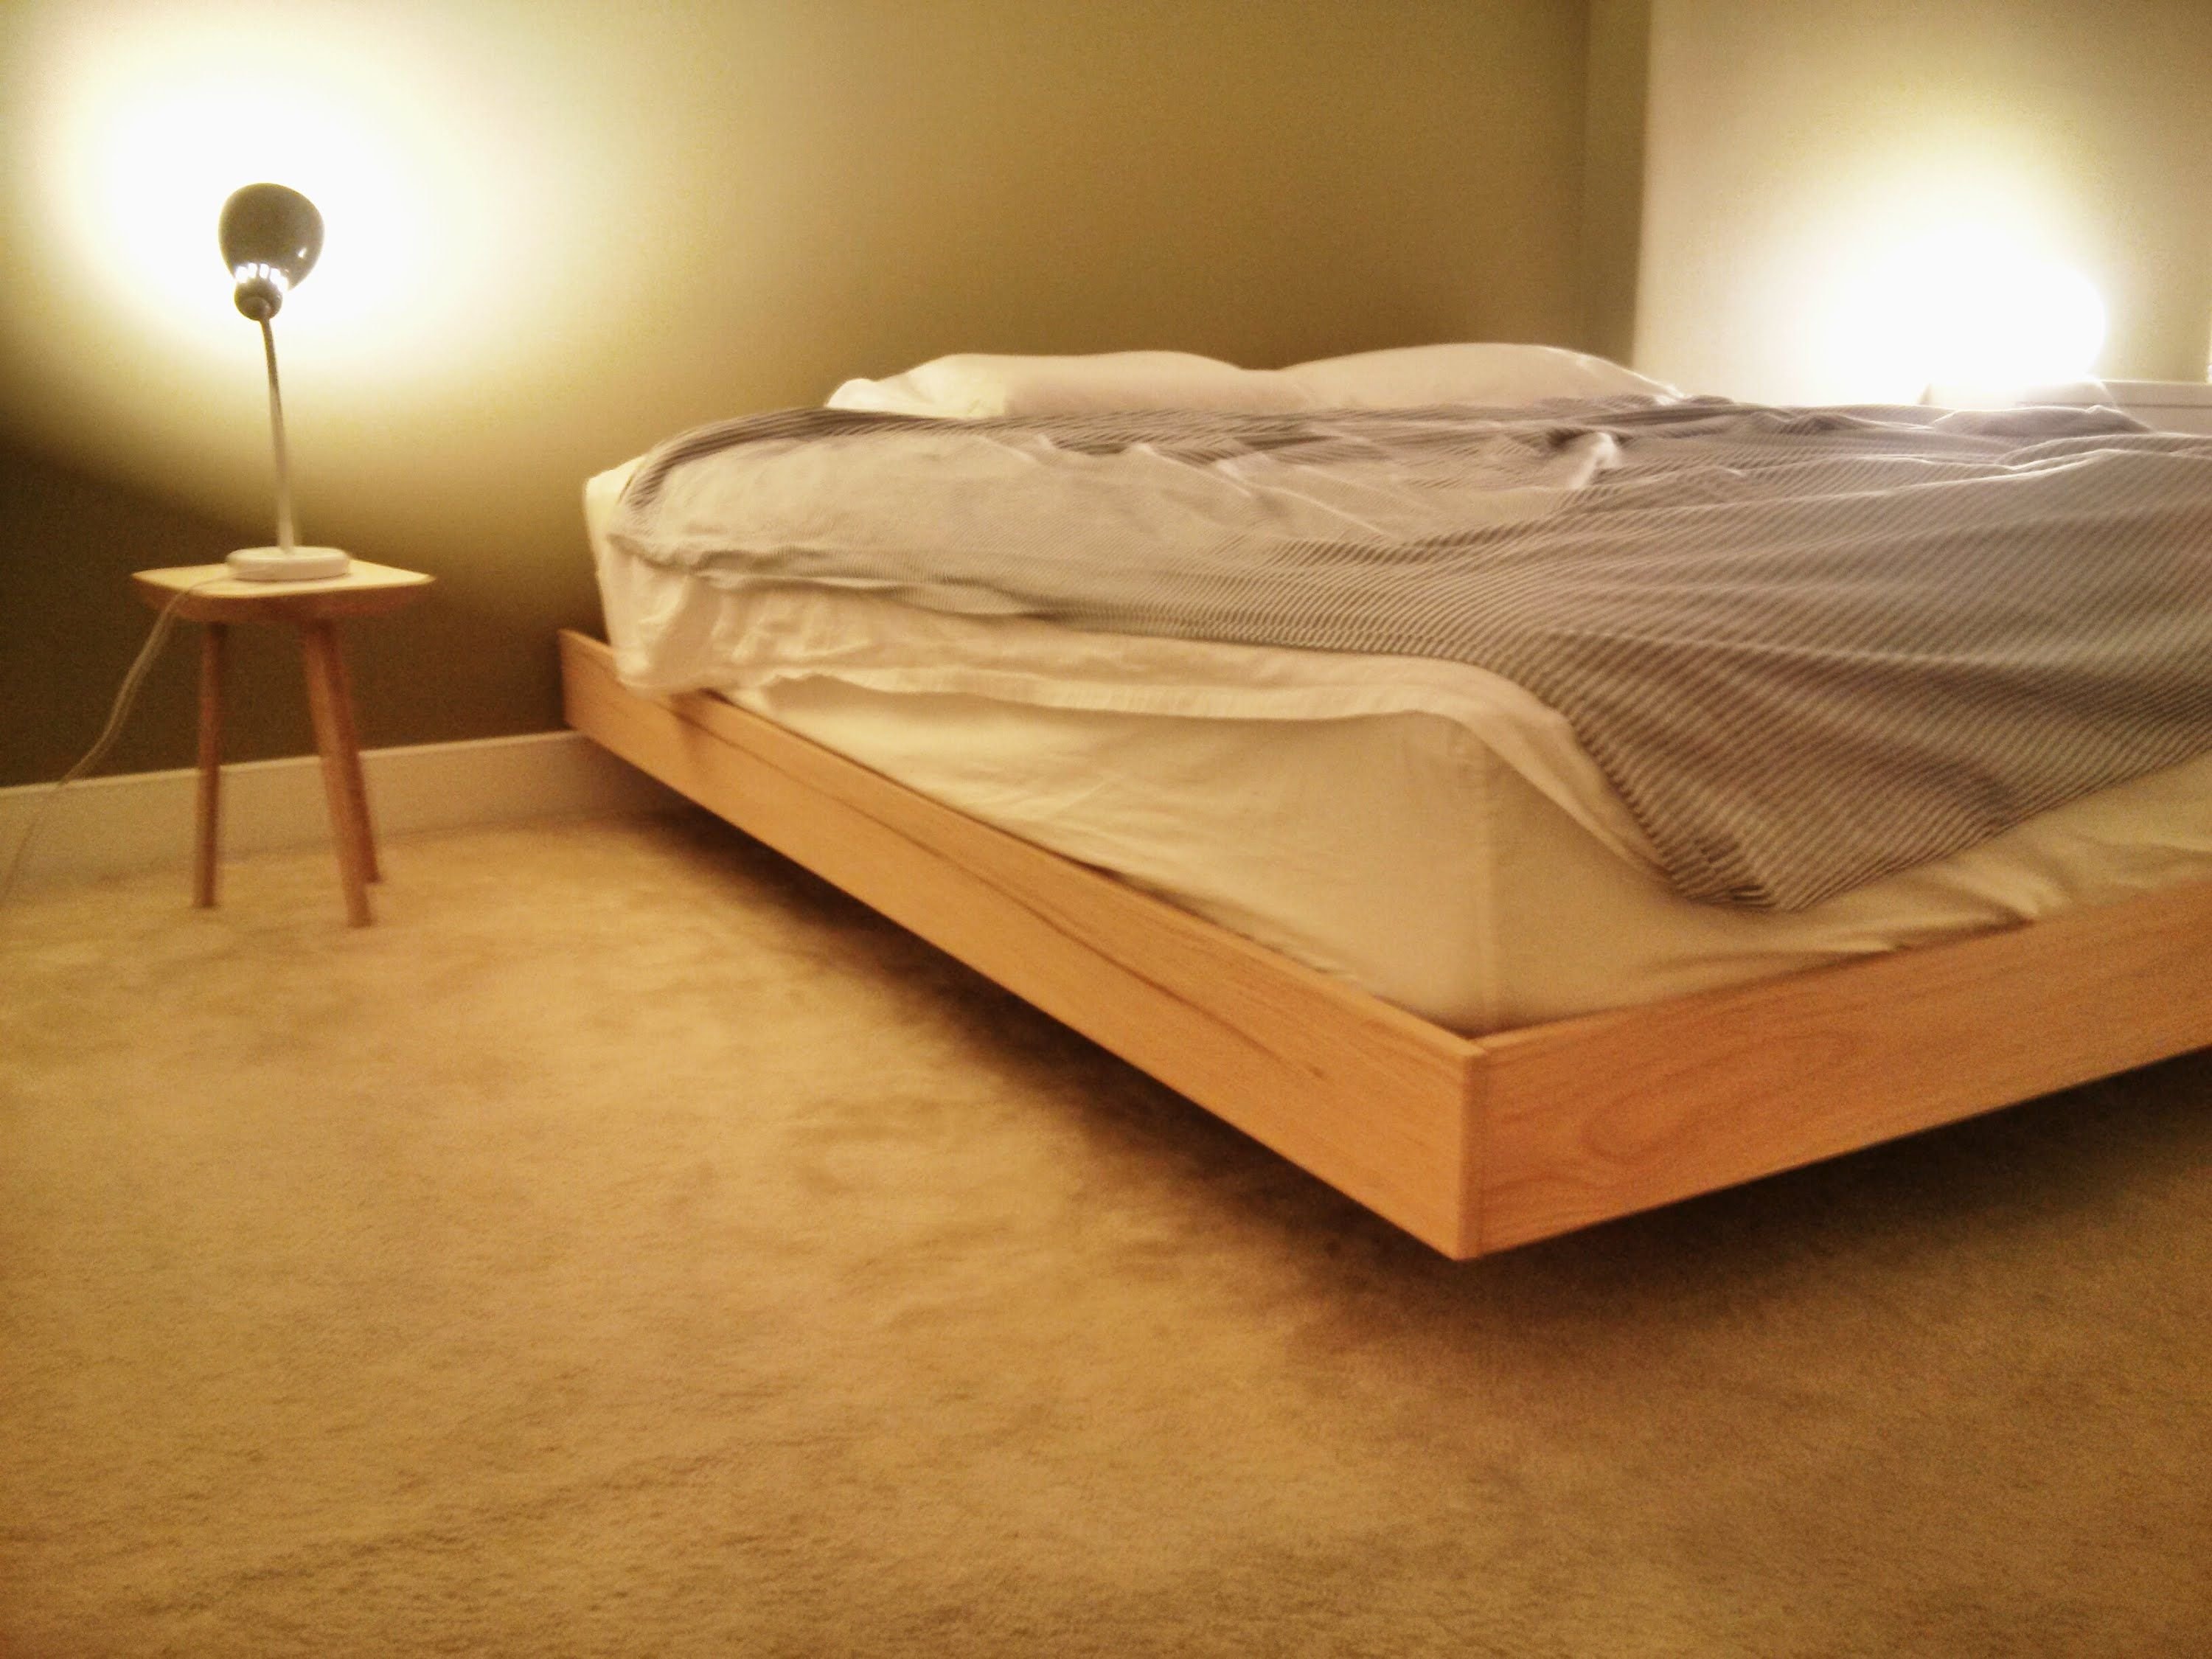 Скинь кровать. Кровать Magnetic Floating Bed. Парящая кровать Торис дерево. Кровать Кинг сайз. Кровать из брусков.